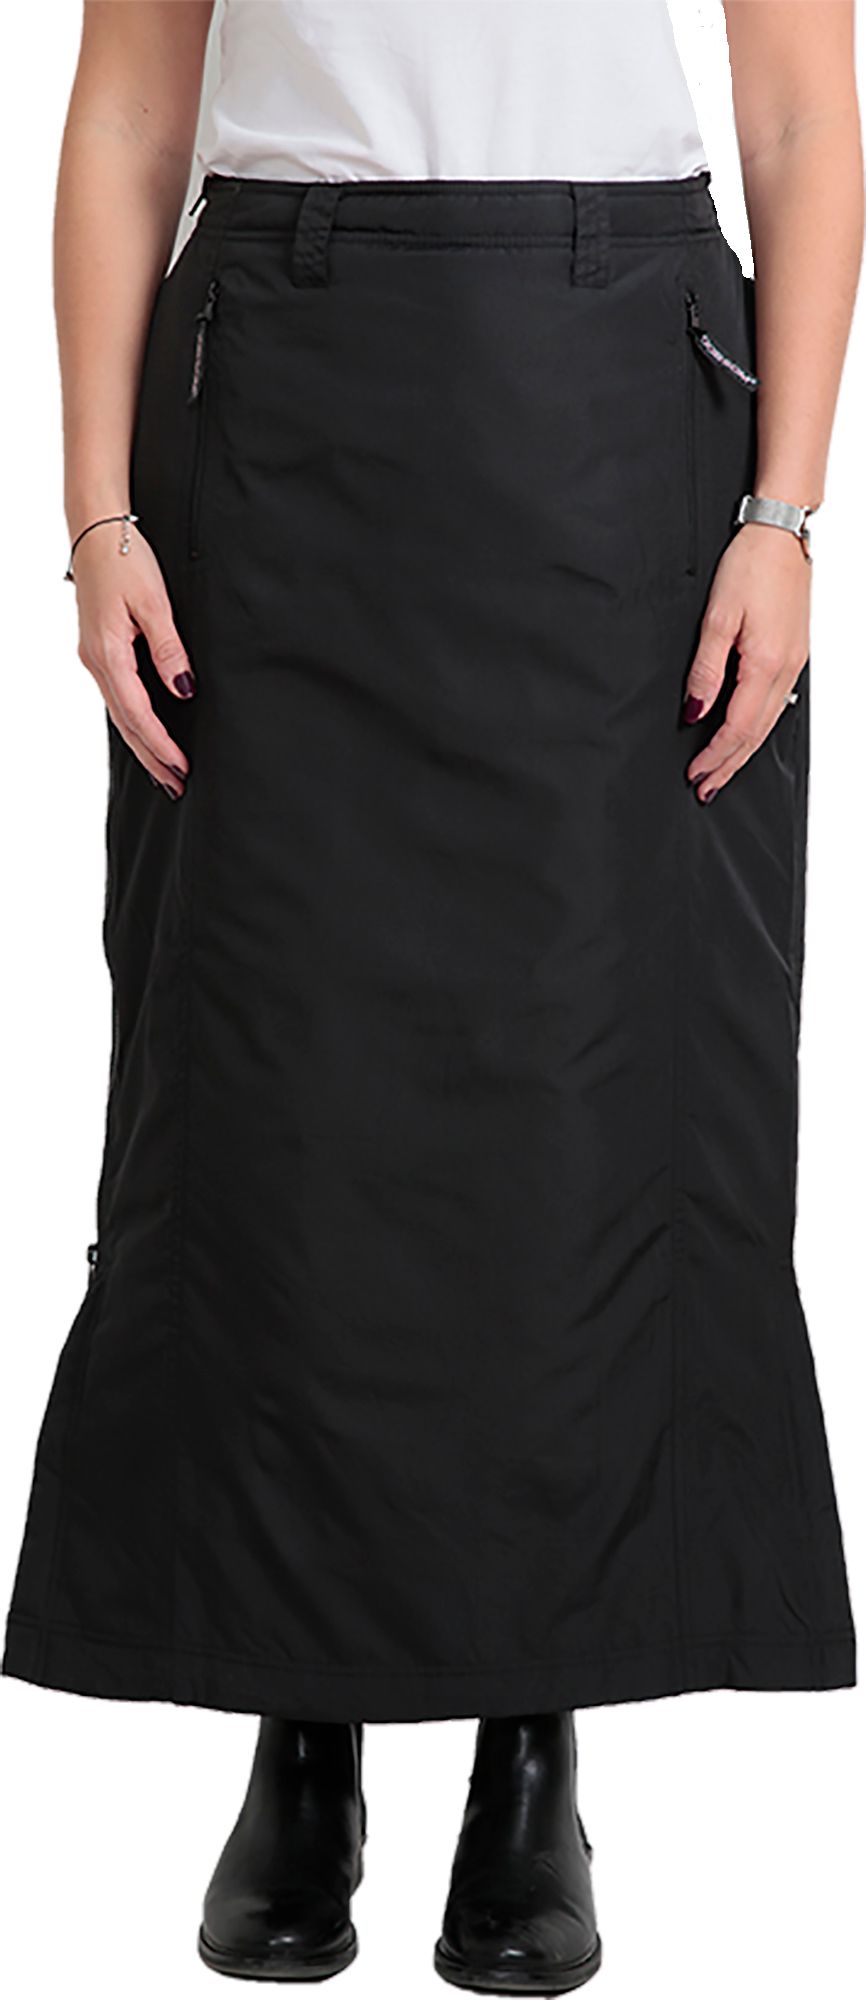 Dobsom Women's Comfort Thermo Skirt Black